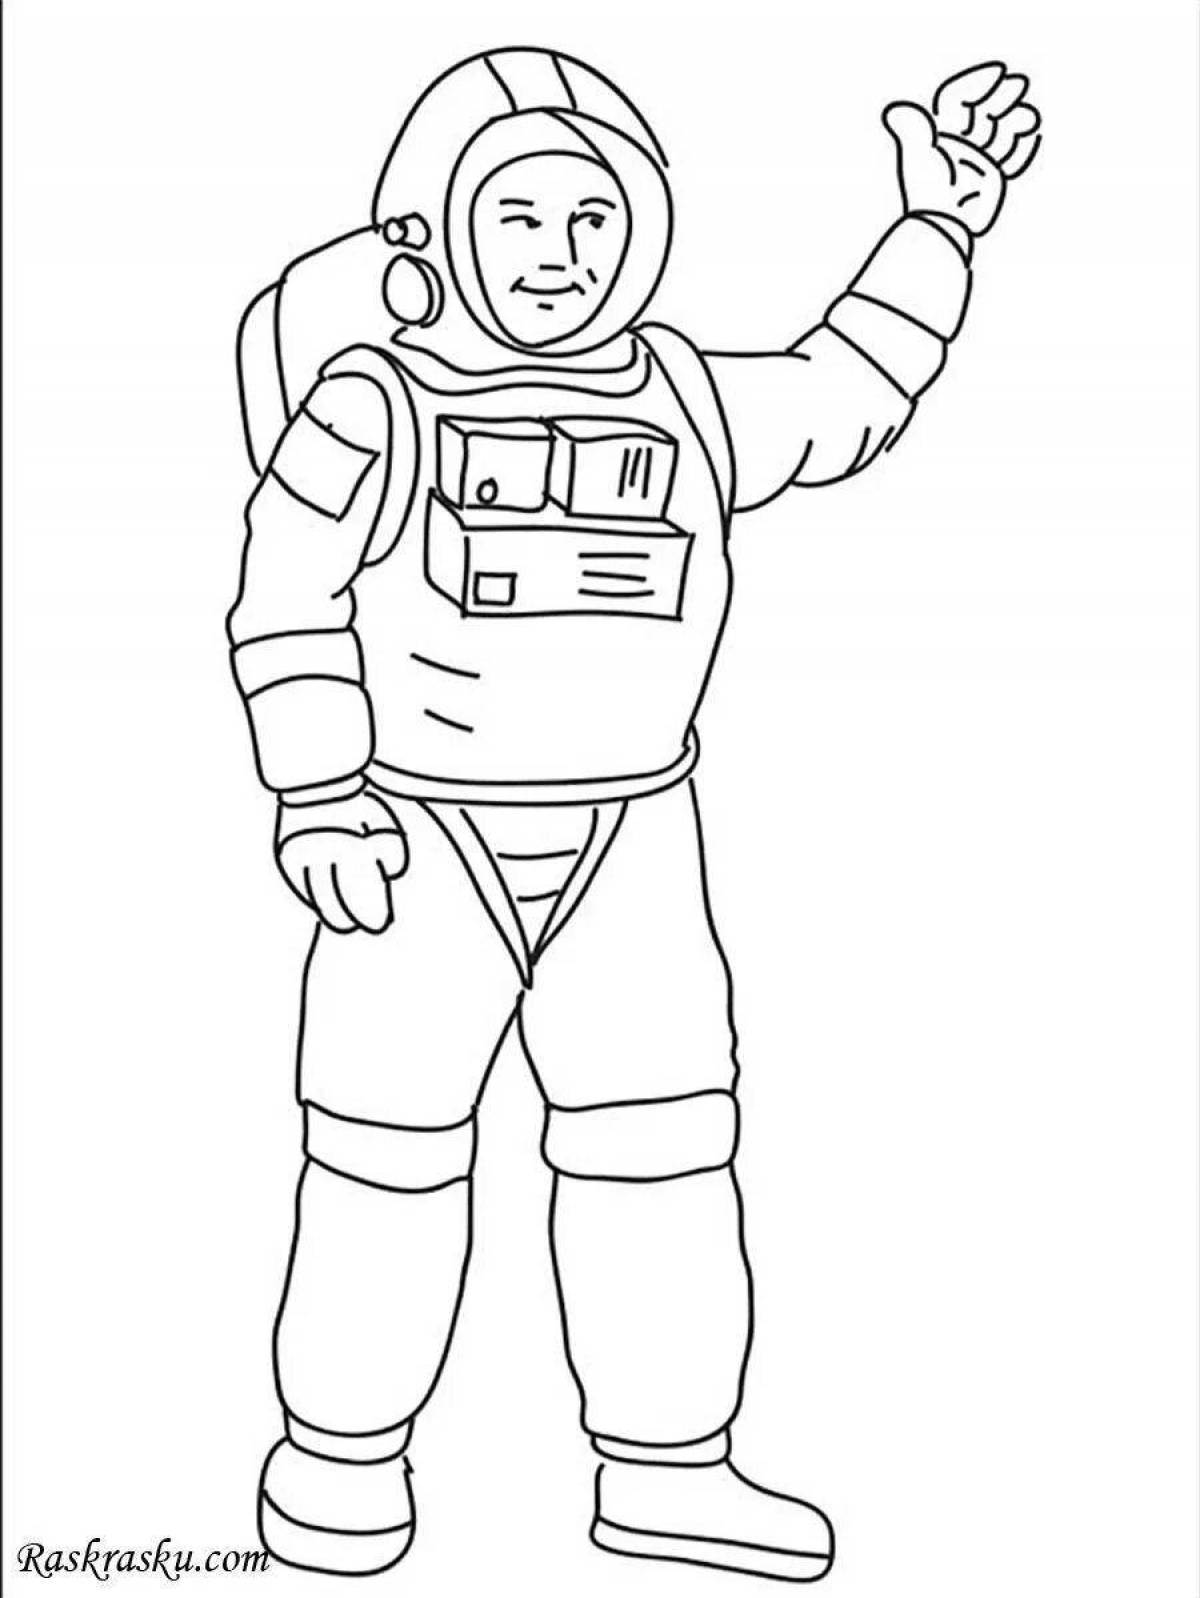 Скафандр раскраска. Космонавт раскраска для детей. Раскраска космонавт в скафандре. Космонавт раскраска для малышей. Космонавт для раскрашивания для детей.